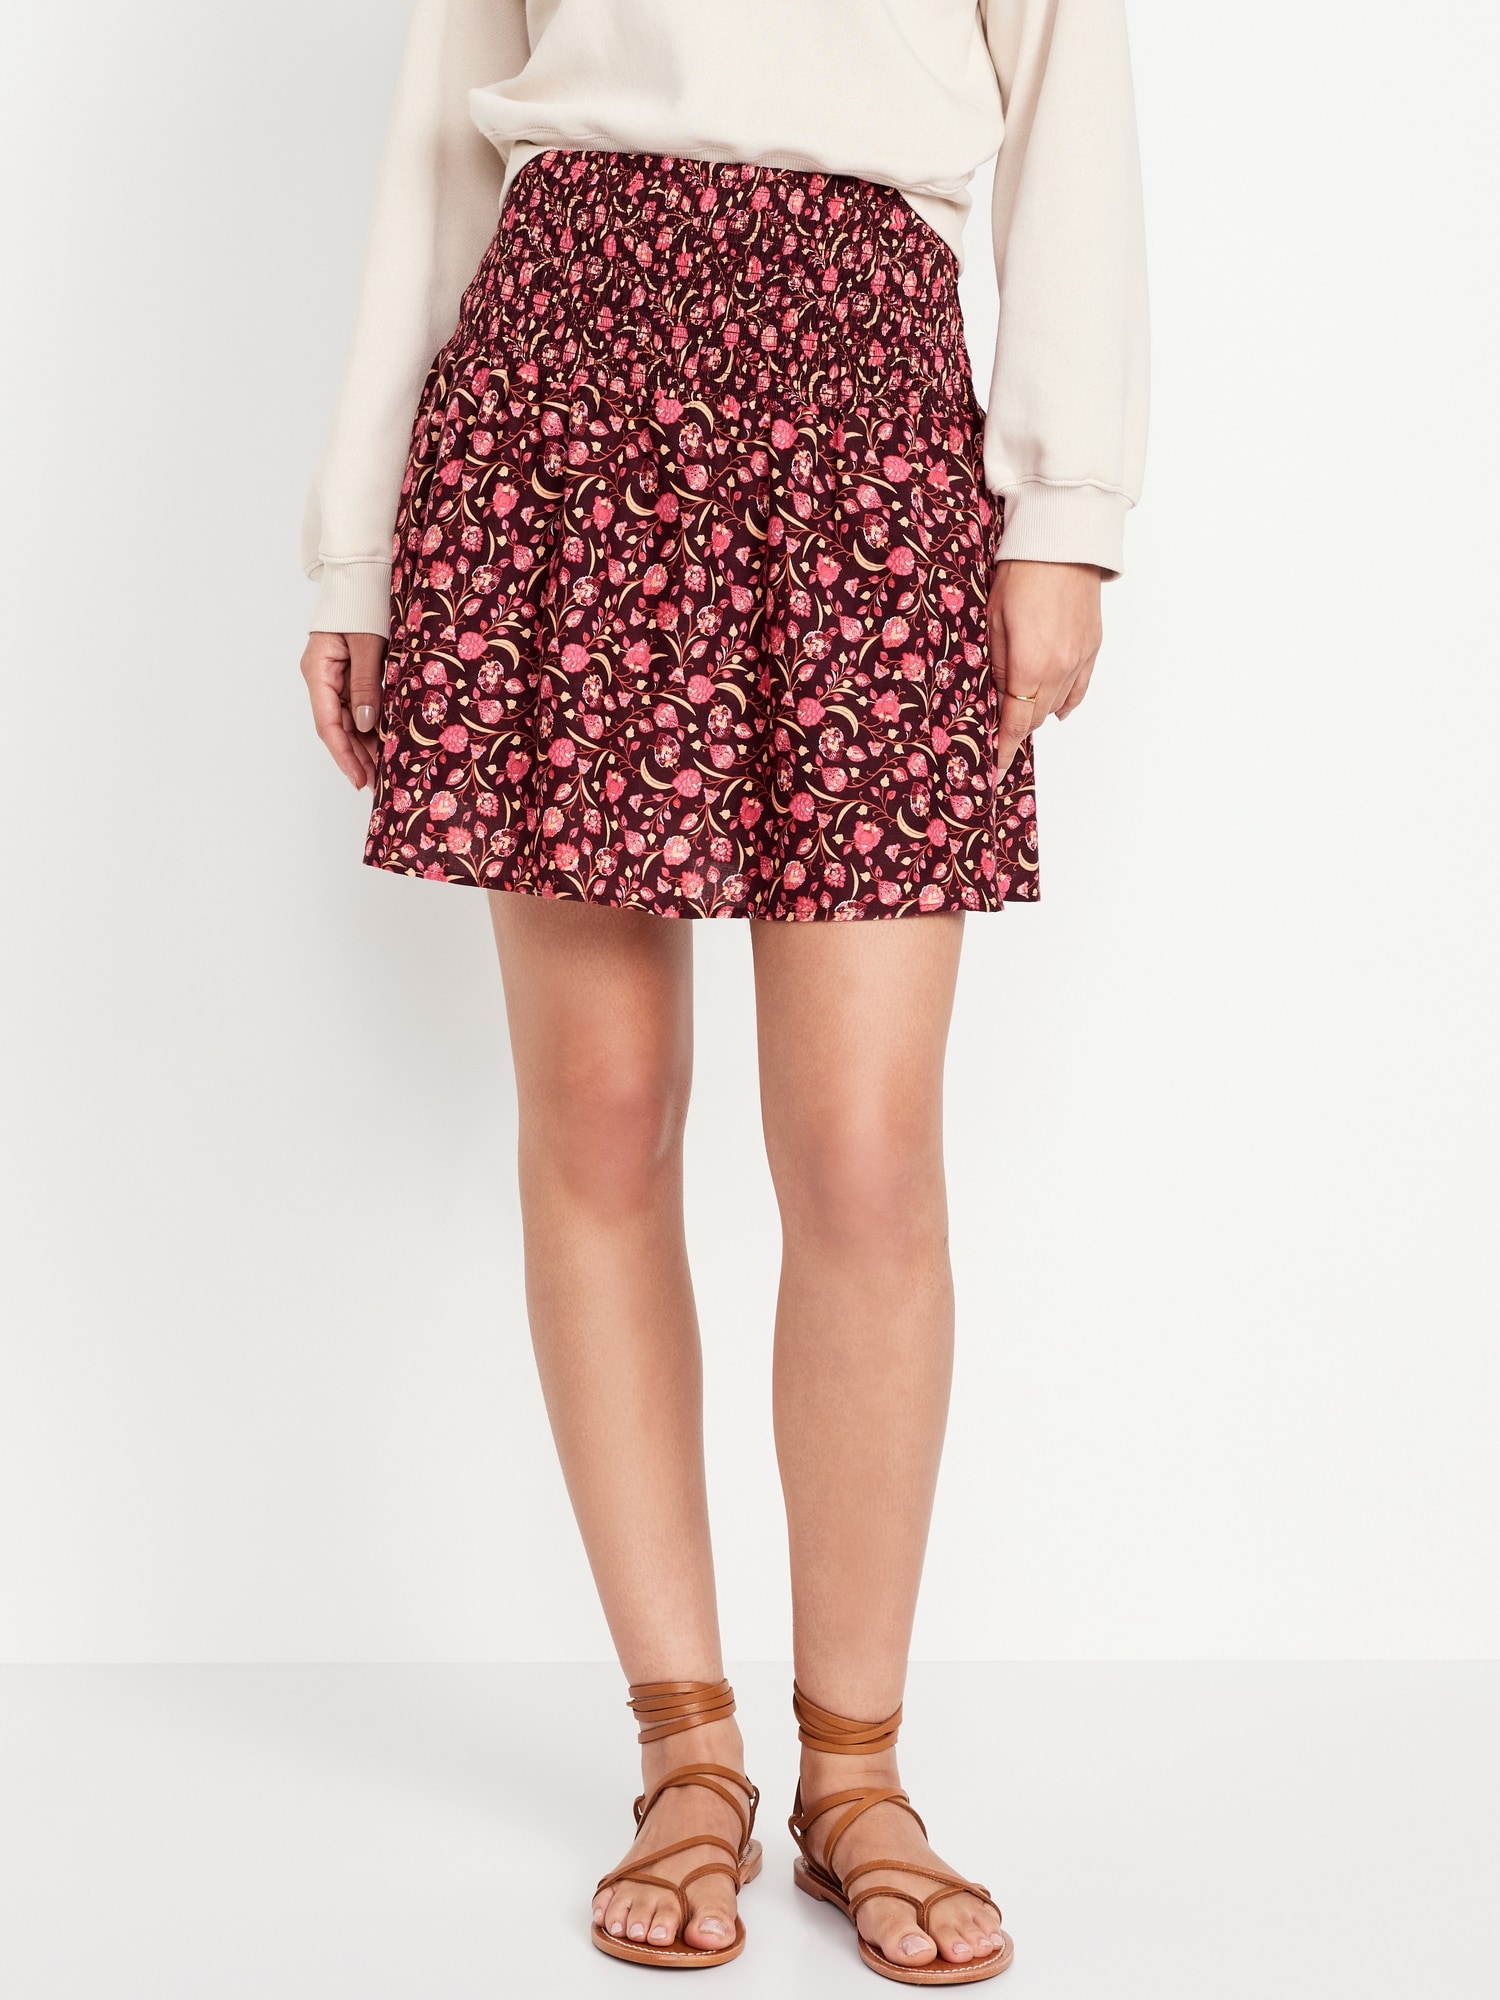 Smocked-Waist Mini Skirt Hot Deal